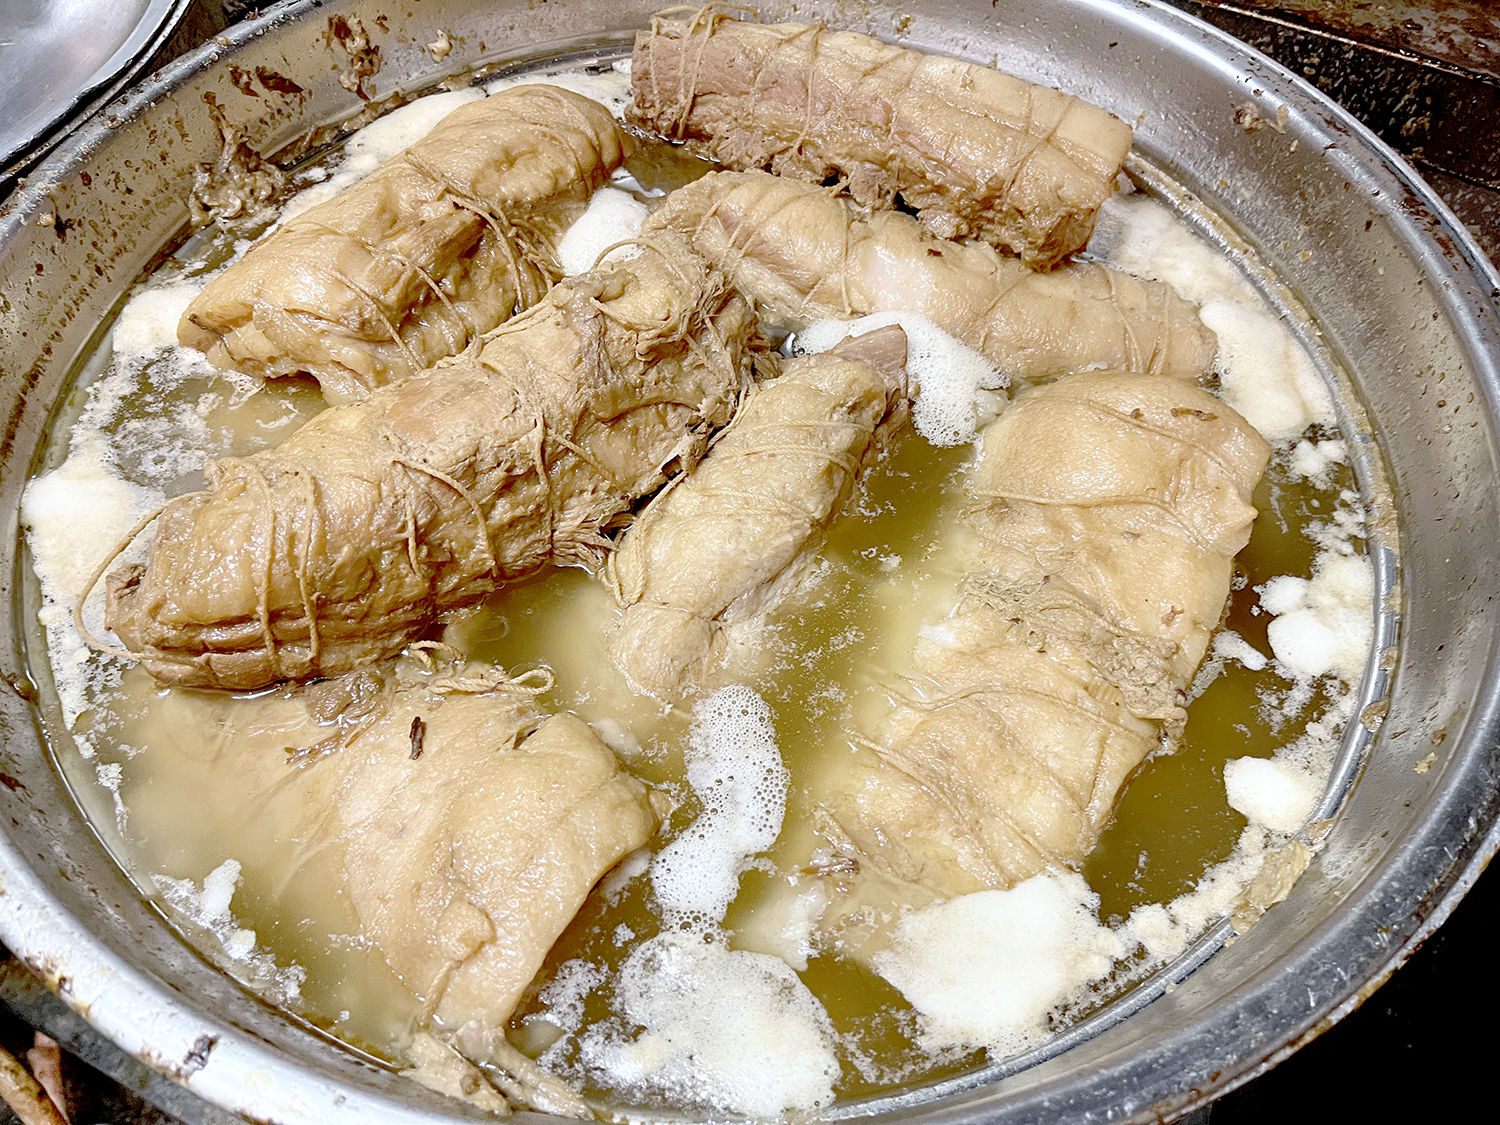 カネシ醤油に漬け込んで仕上げるチャーシューは豚バラとウデがある。